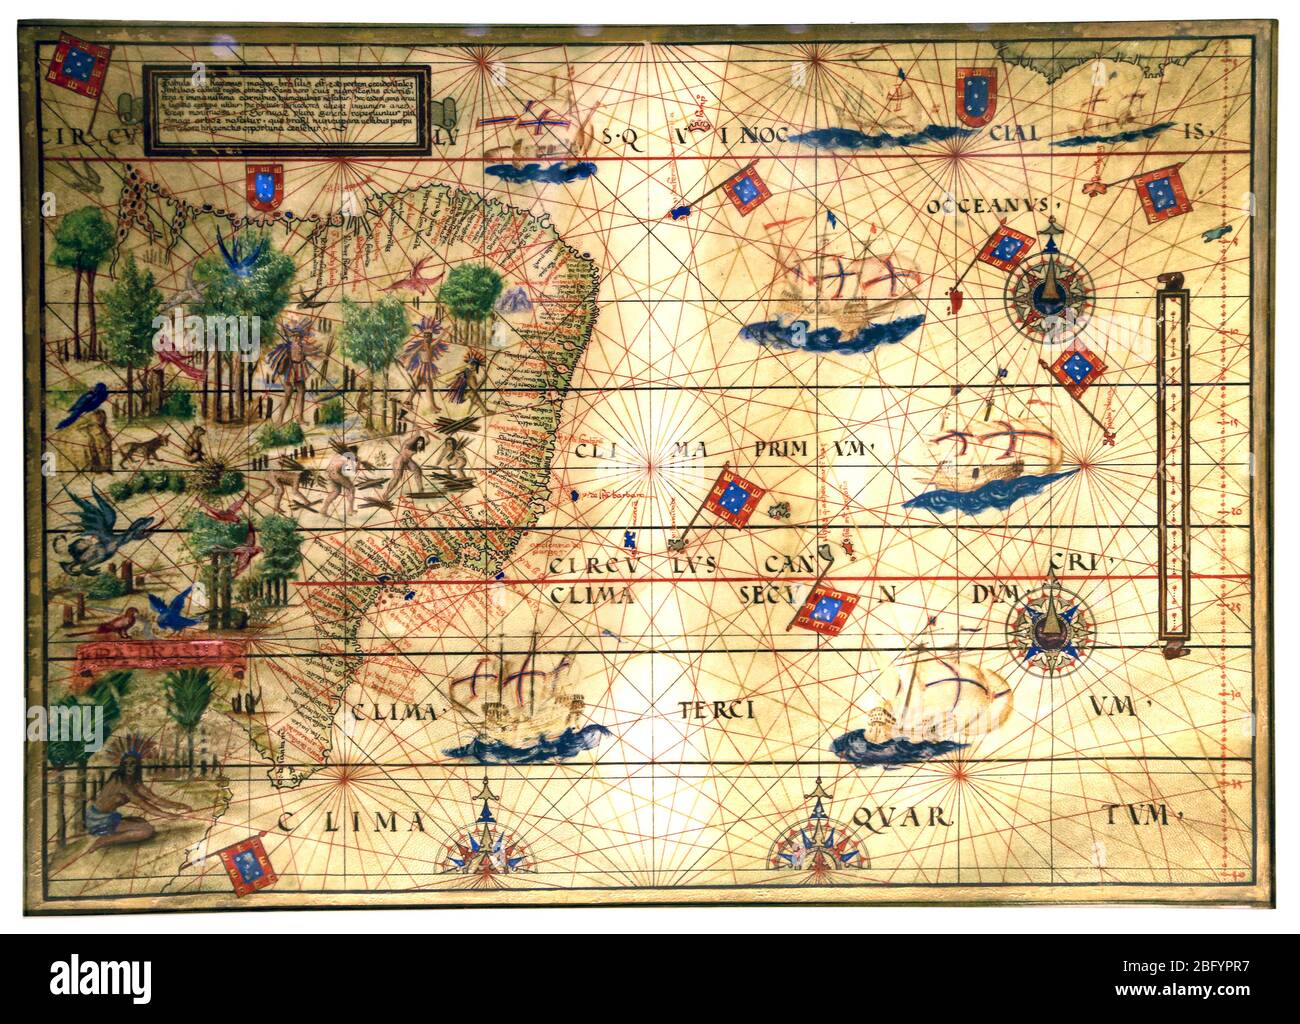 Carte de Terra Brasilis. Carte illustrée du Brésil (C. 1519) par Lopo Homem, Pedro et Jorge Reinel. Copie de l'original dans la Bibliothèque de France Banque D'Images